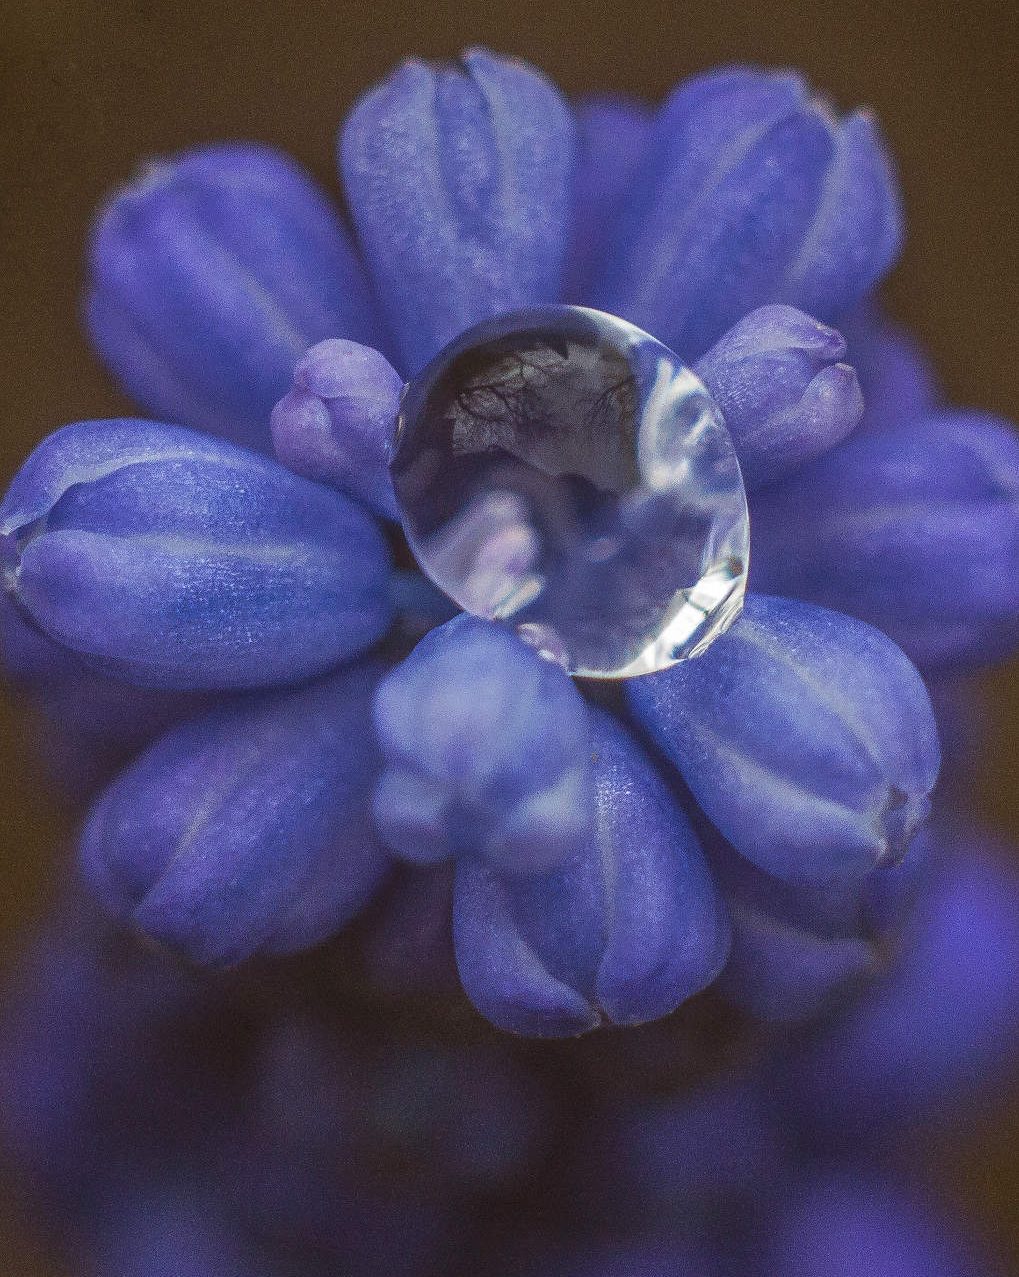 Blue buds with Drew Drop by Roksolane Zasiadko via Unsplash